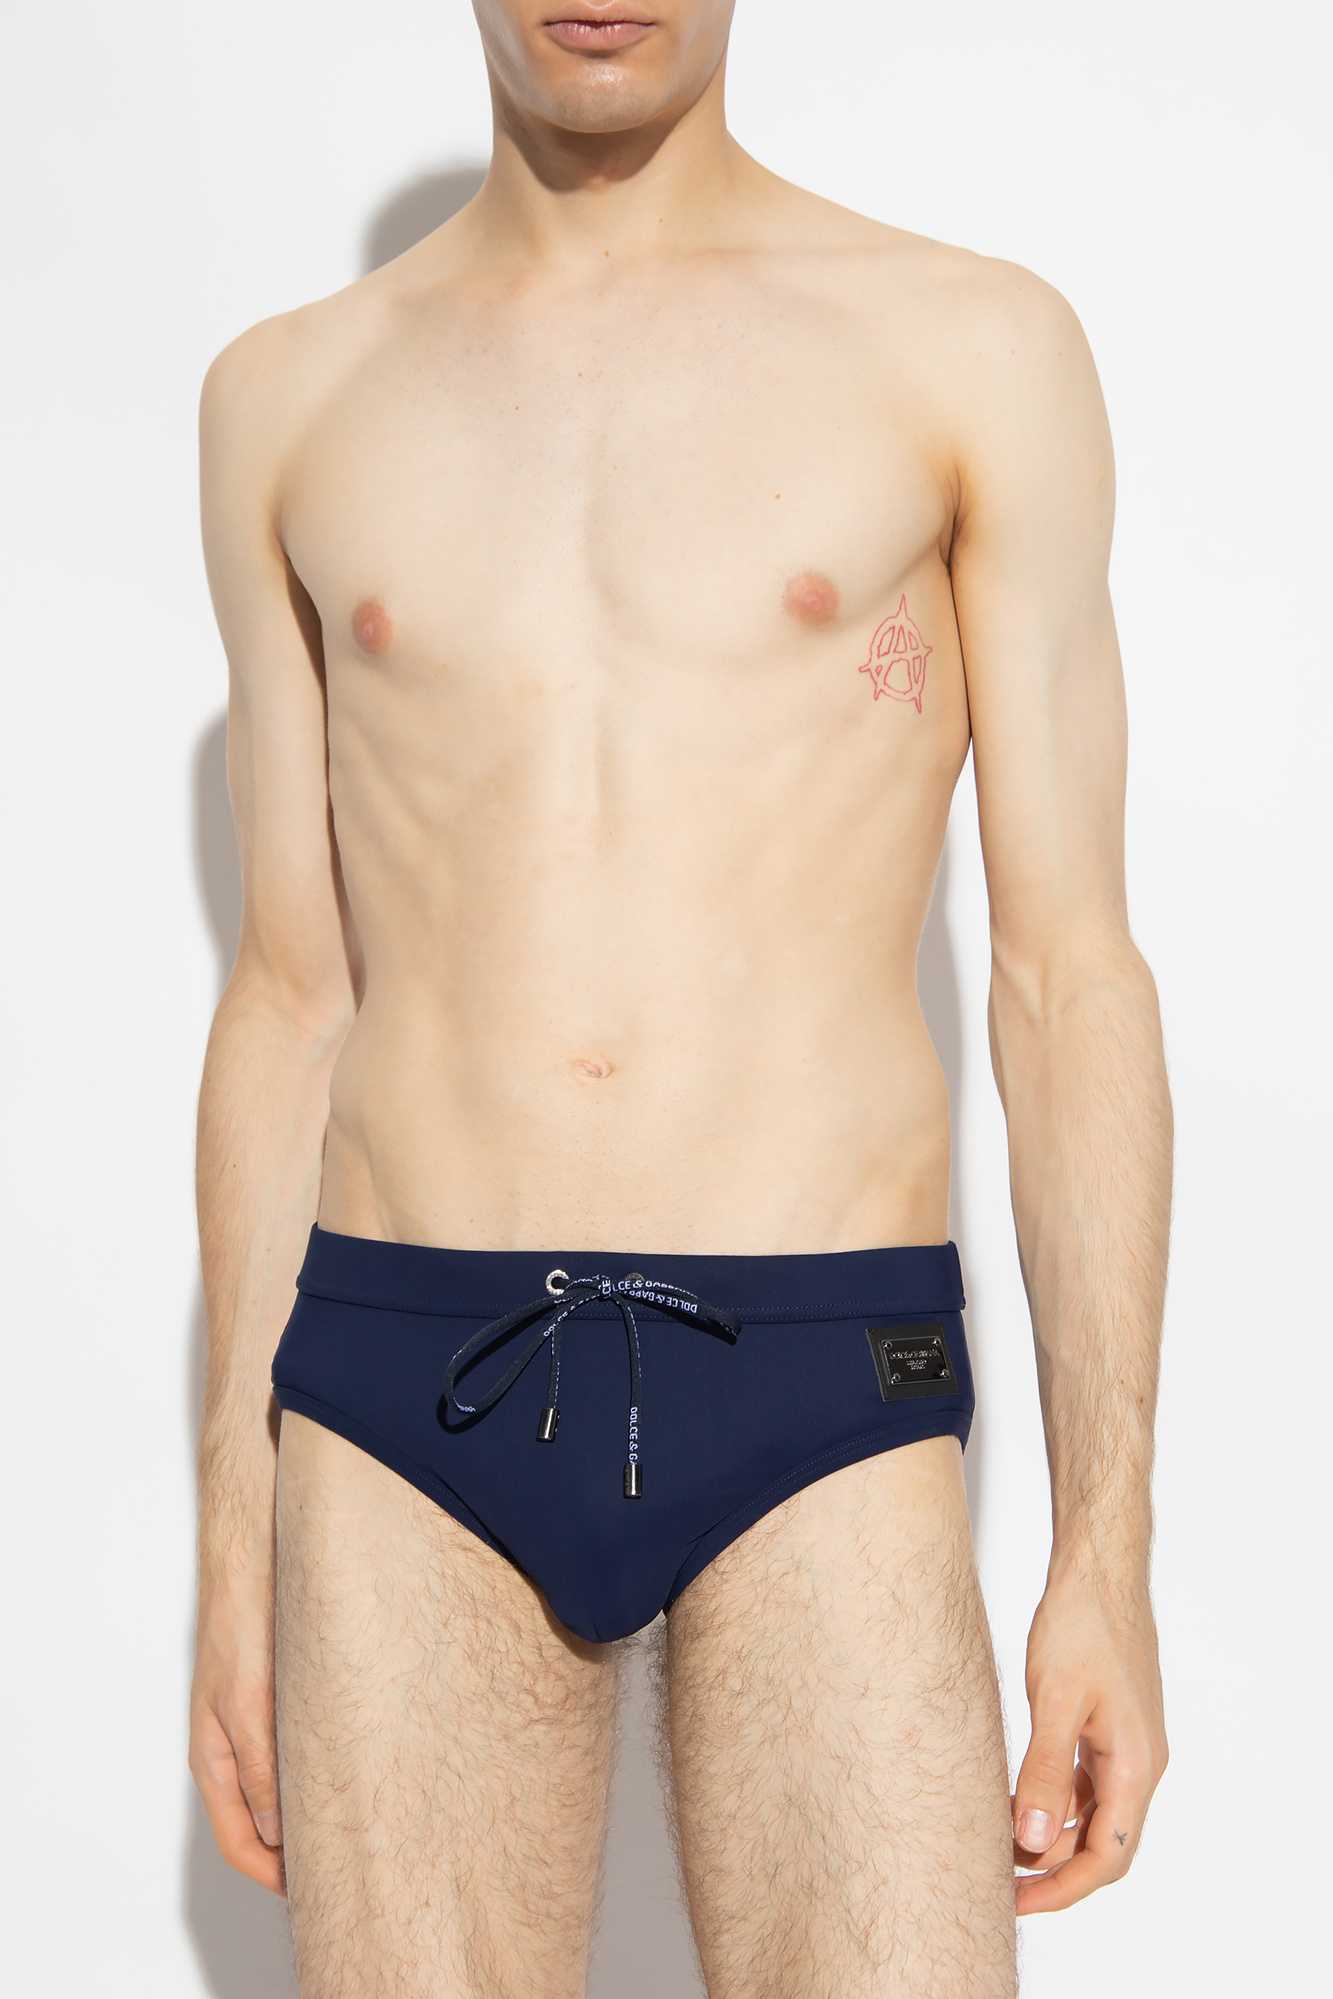 D&G - Dolce & Gabbana Men's Underwear Brando Brief Size 34 36 38 New